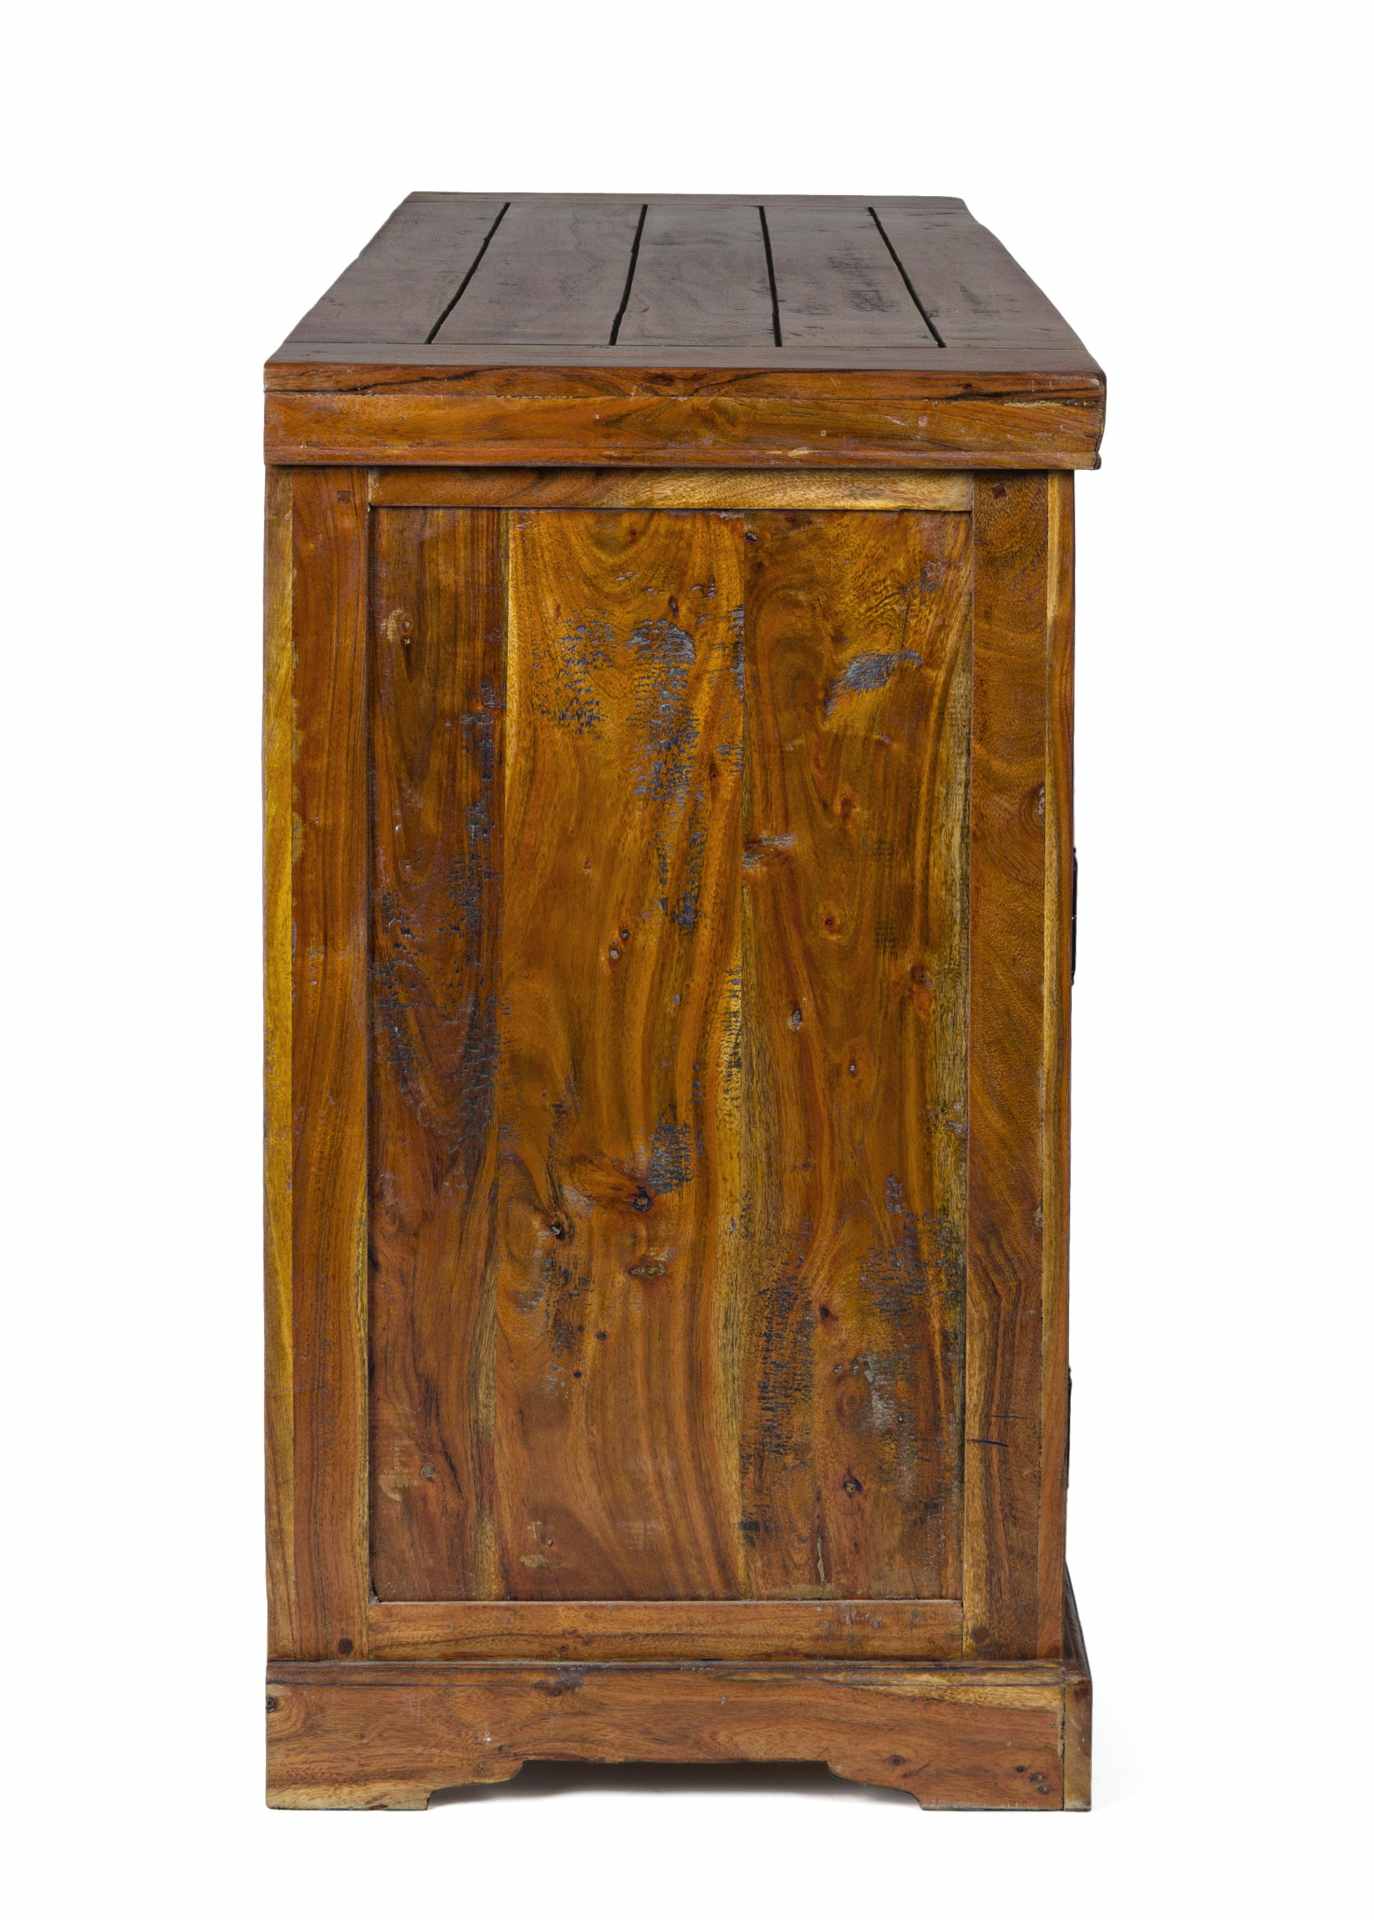 Das Sideboard Chateaux überzeugt mit seinem klassischen Design. Gefertigt wurde es aus Akazien-Holz, welches einen natürlichen Farbton besitzt. Das Gestell ist auch aus Akazien-Holz. Das Sideboard verfügt über drei Türen und drei Schubladen. Die Breite be